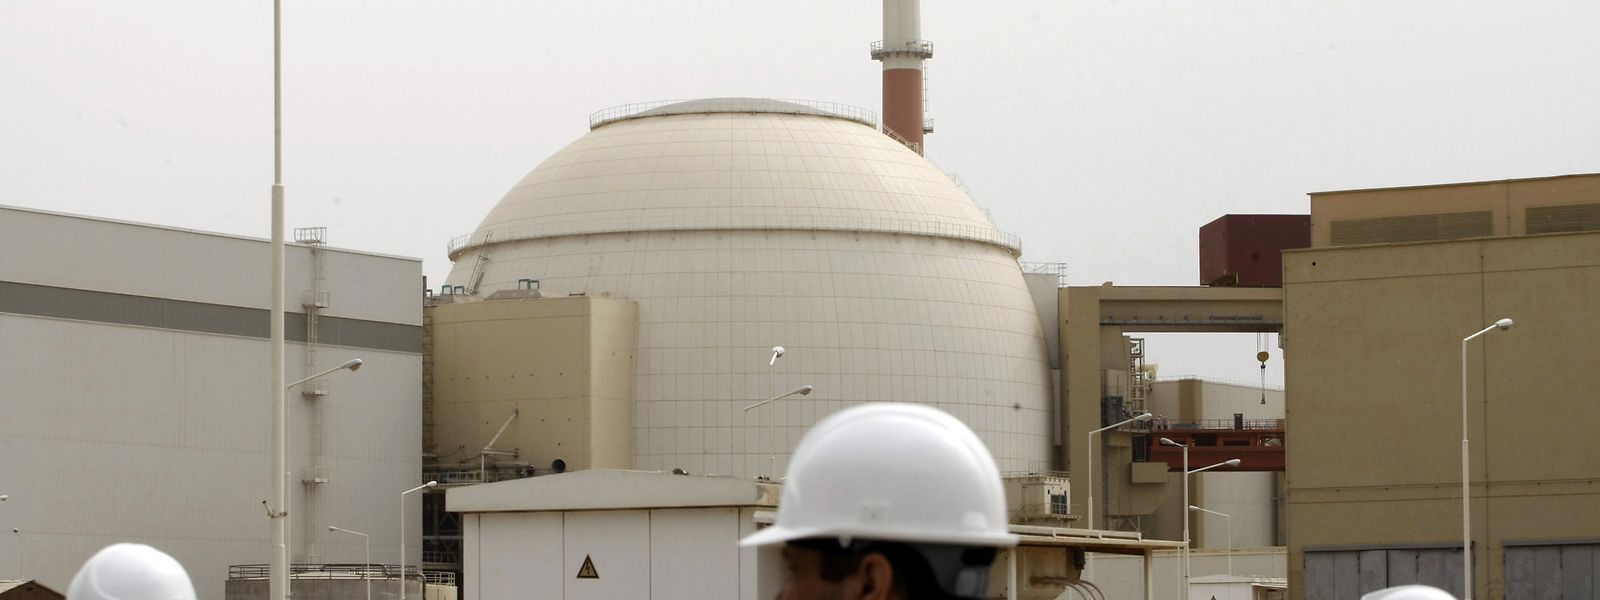 Der Sprecher der iranischen Atomorganisation kündigte am Samstag an, dass an moderneren und schnelleren Zentrifugen gearbeitet werde, um die Urananreicherung schneller und effektiver zu machen. 